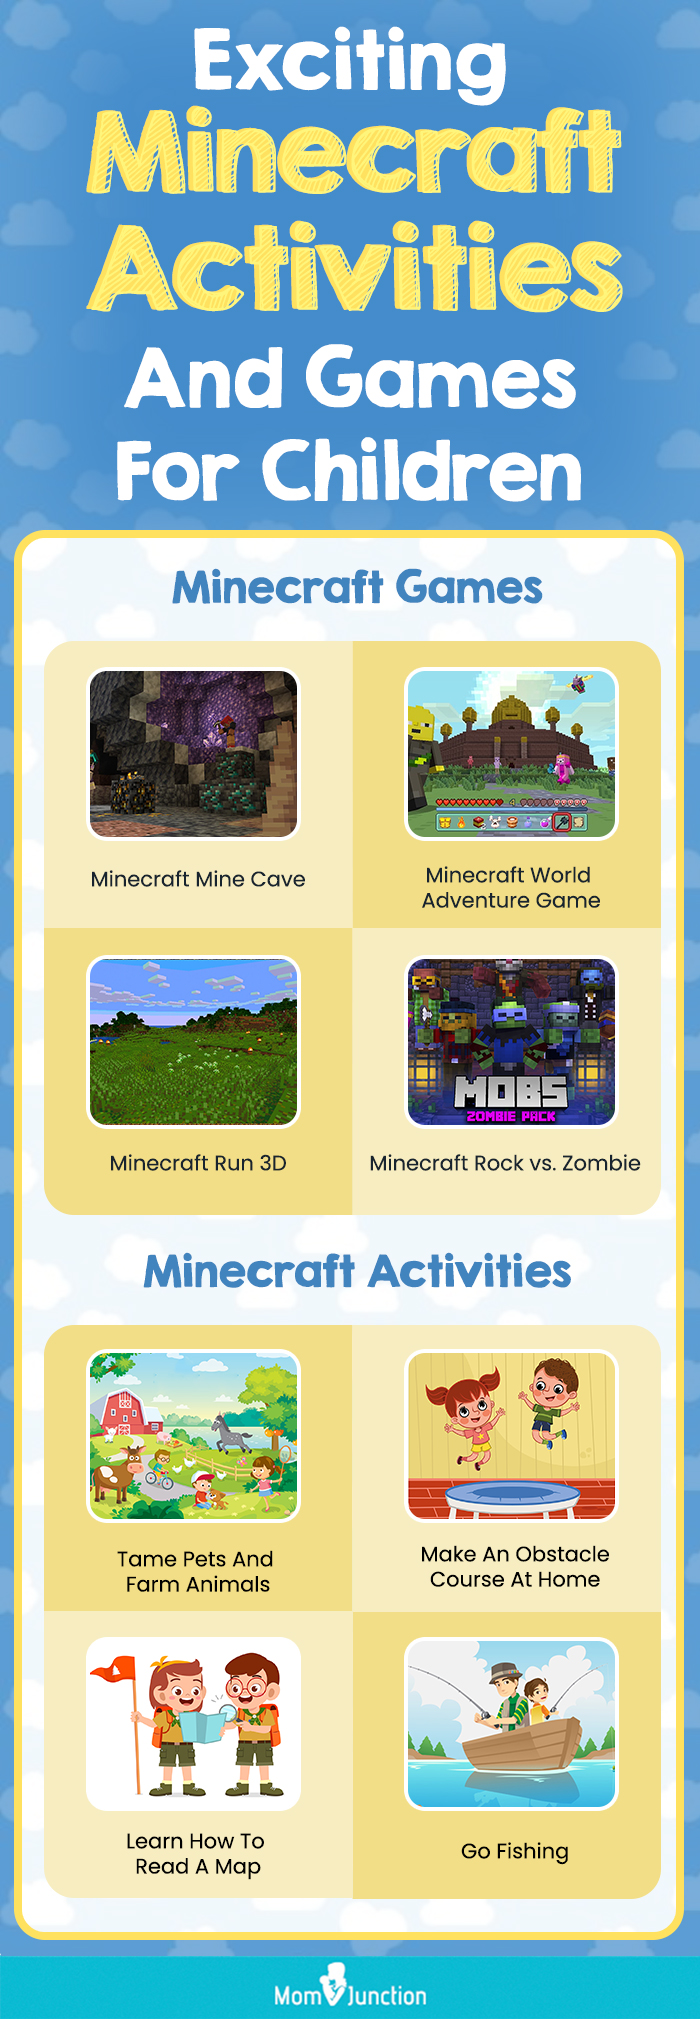 Mine Blocks 3 - Minecraft Games